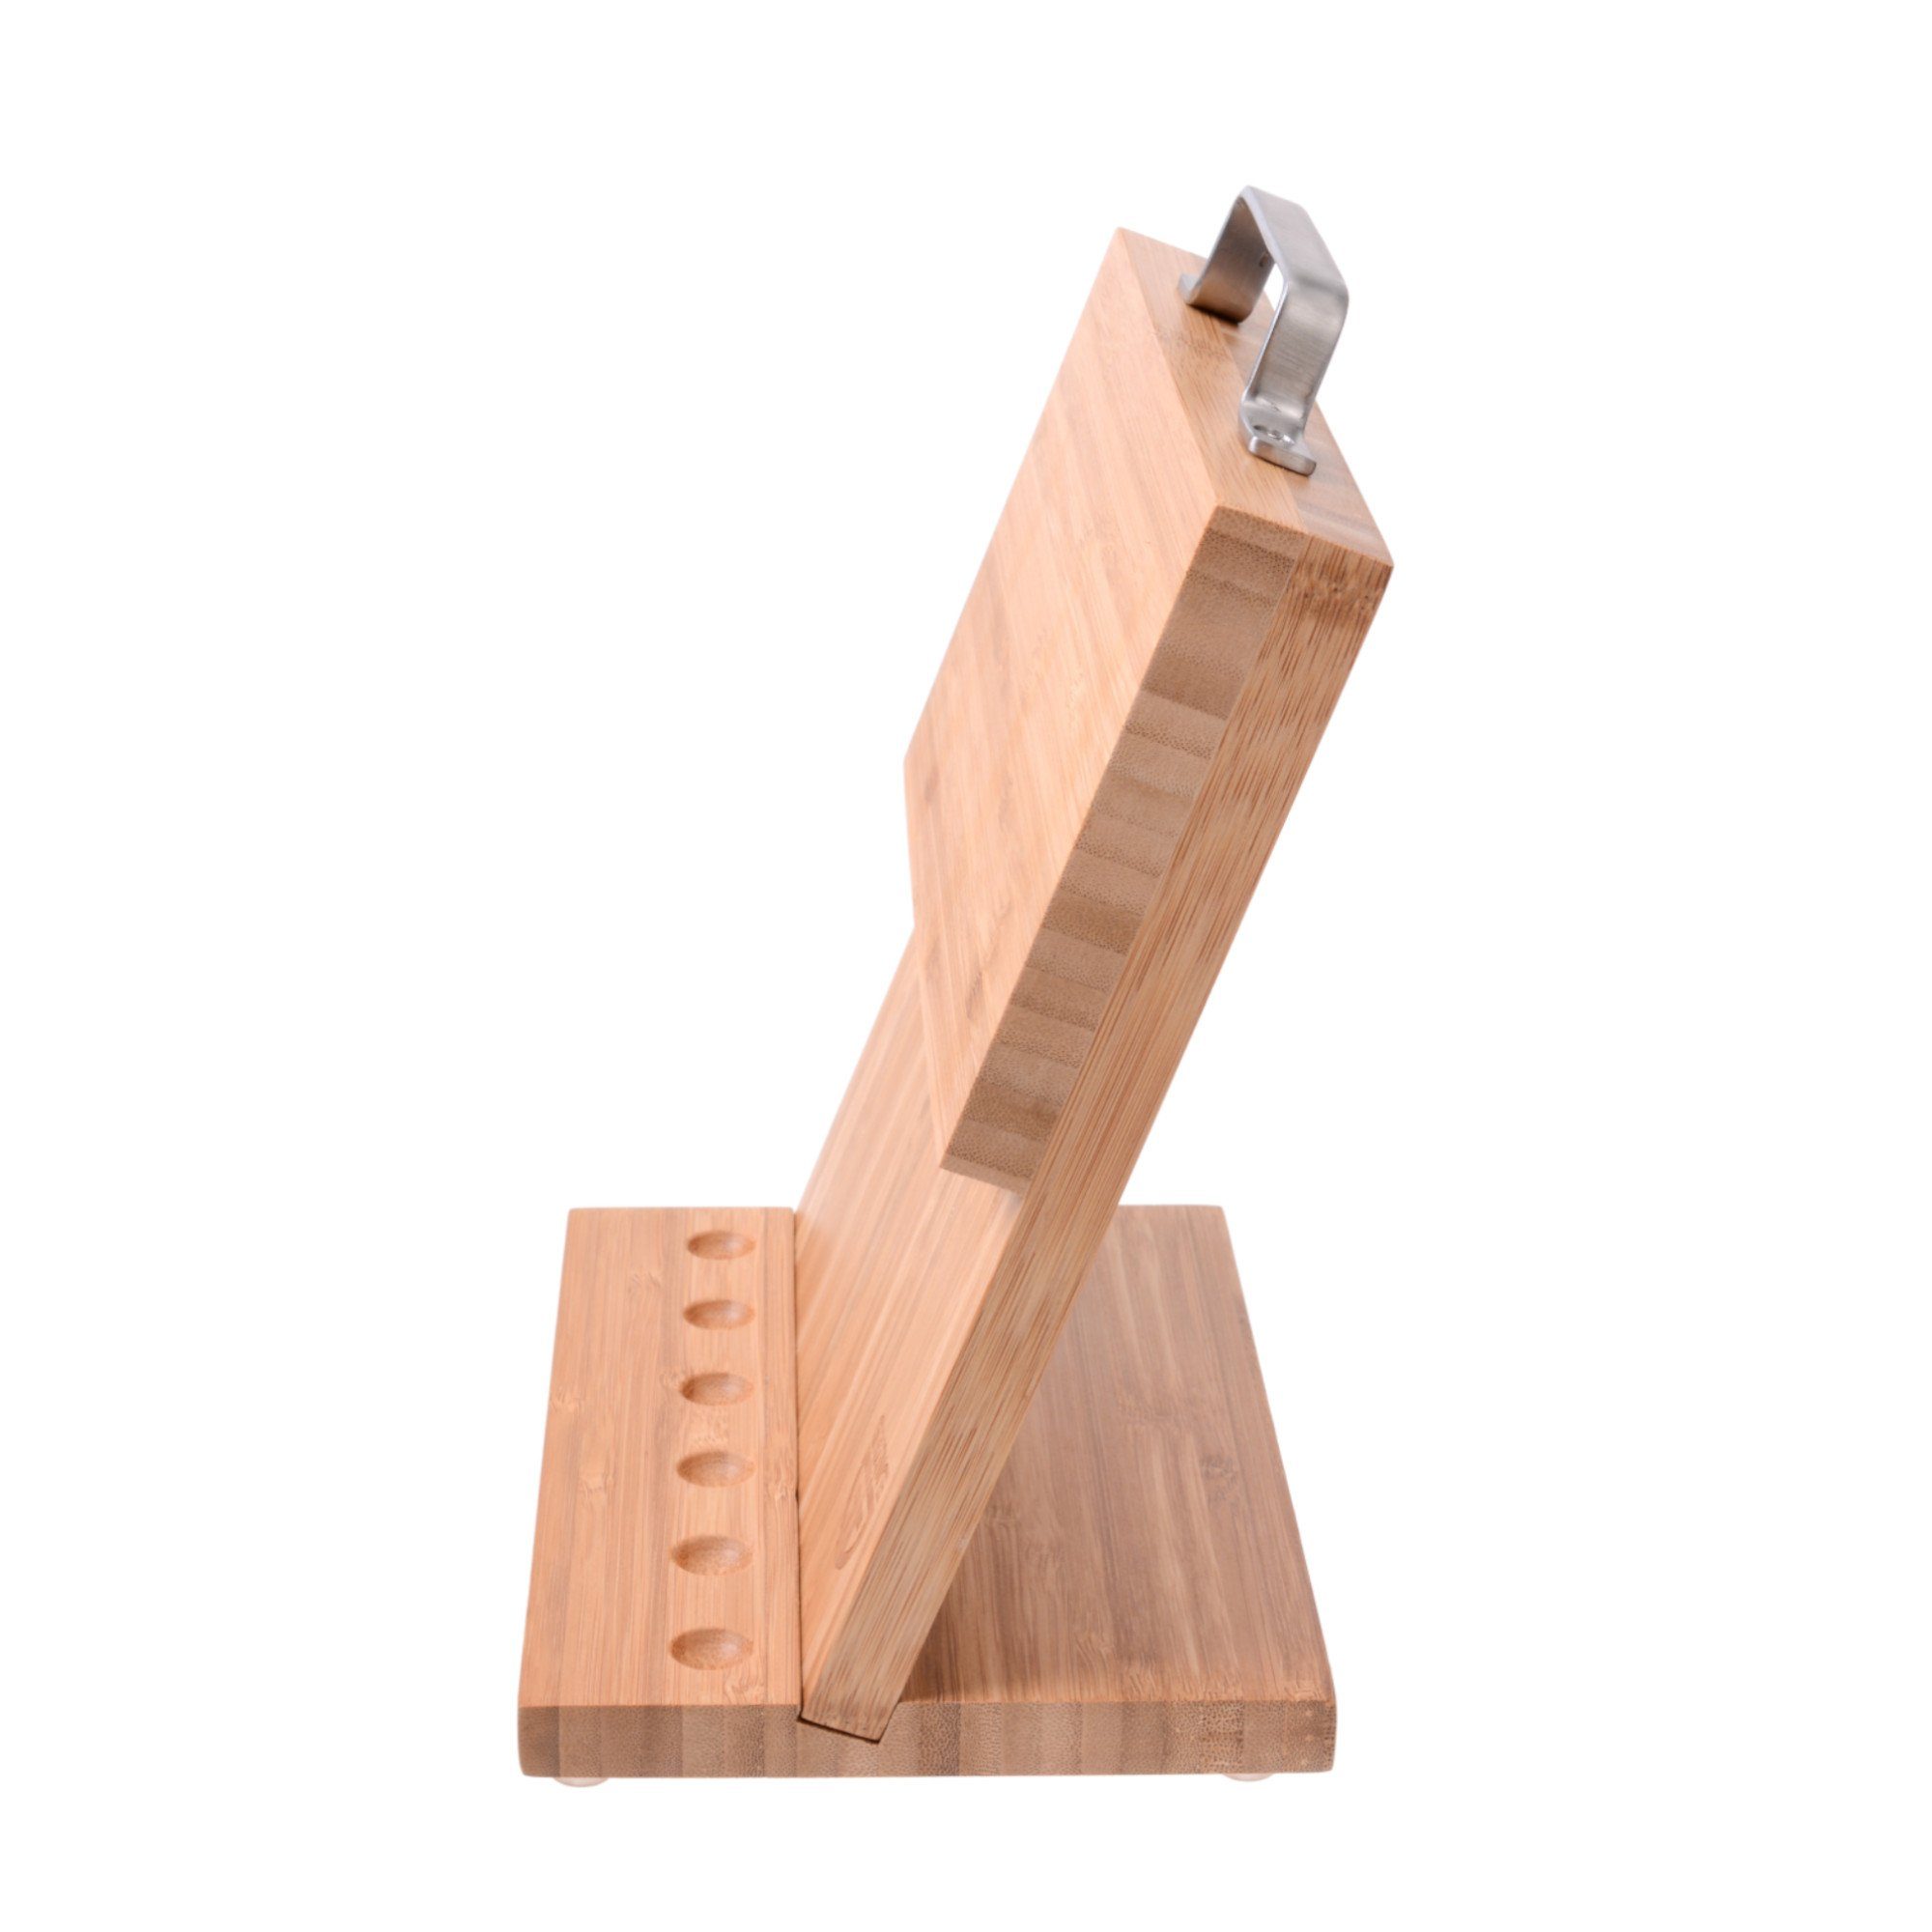 Bunt, GRÄWE Küchenmessern Bambus klein GRÄWE Messerblock Magnet-Messerhalter Natur mit